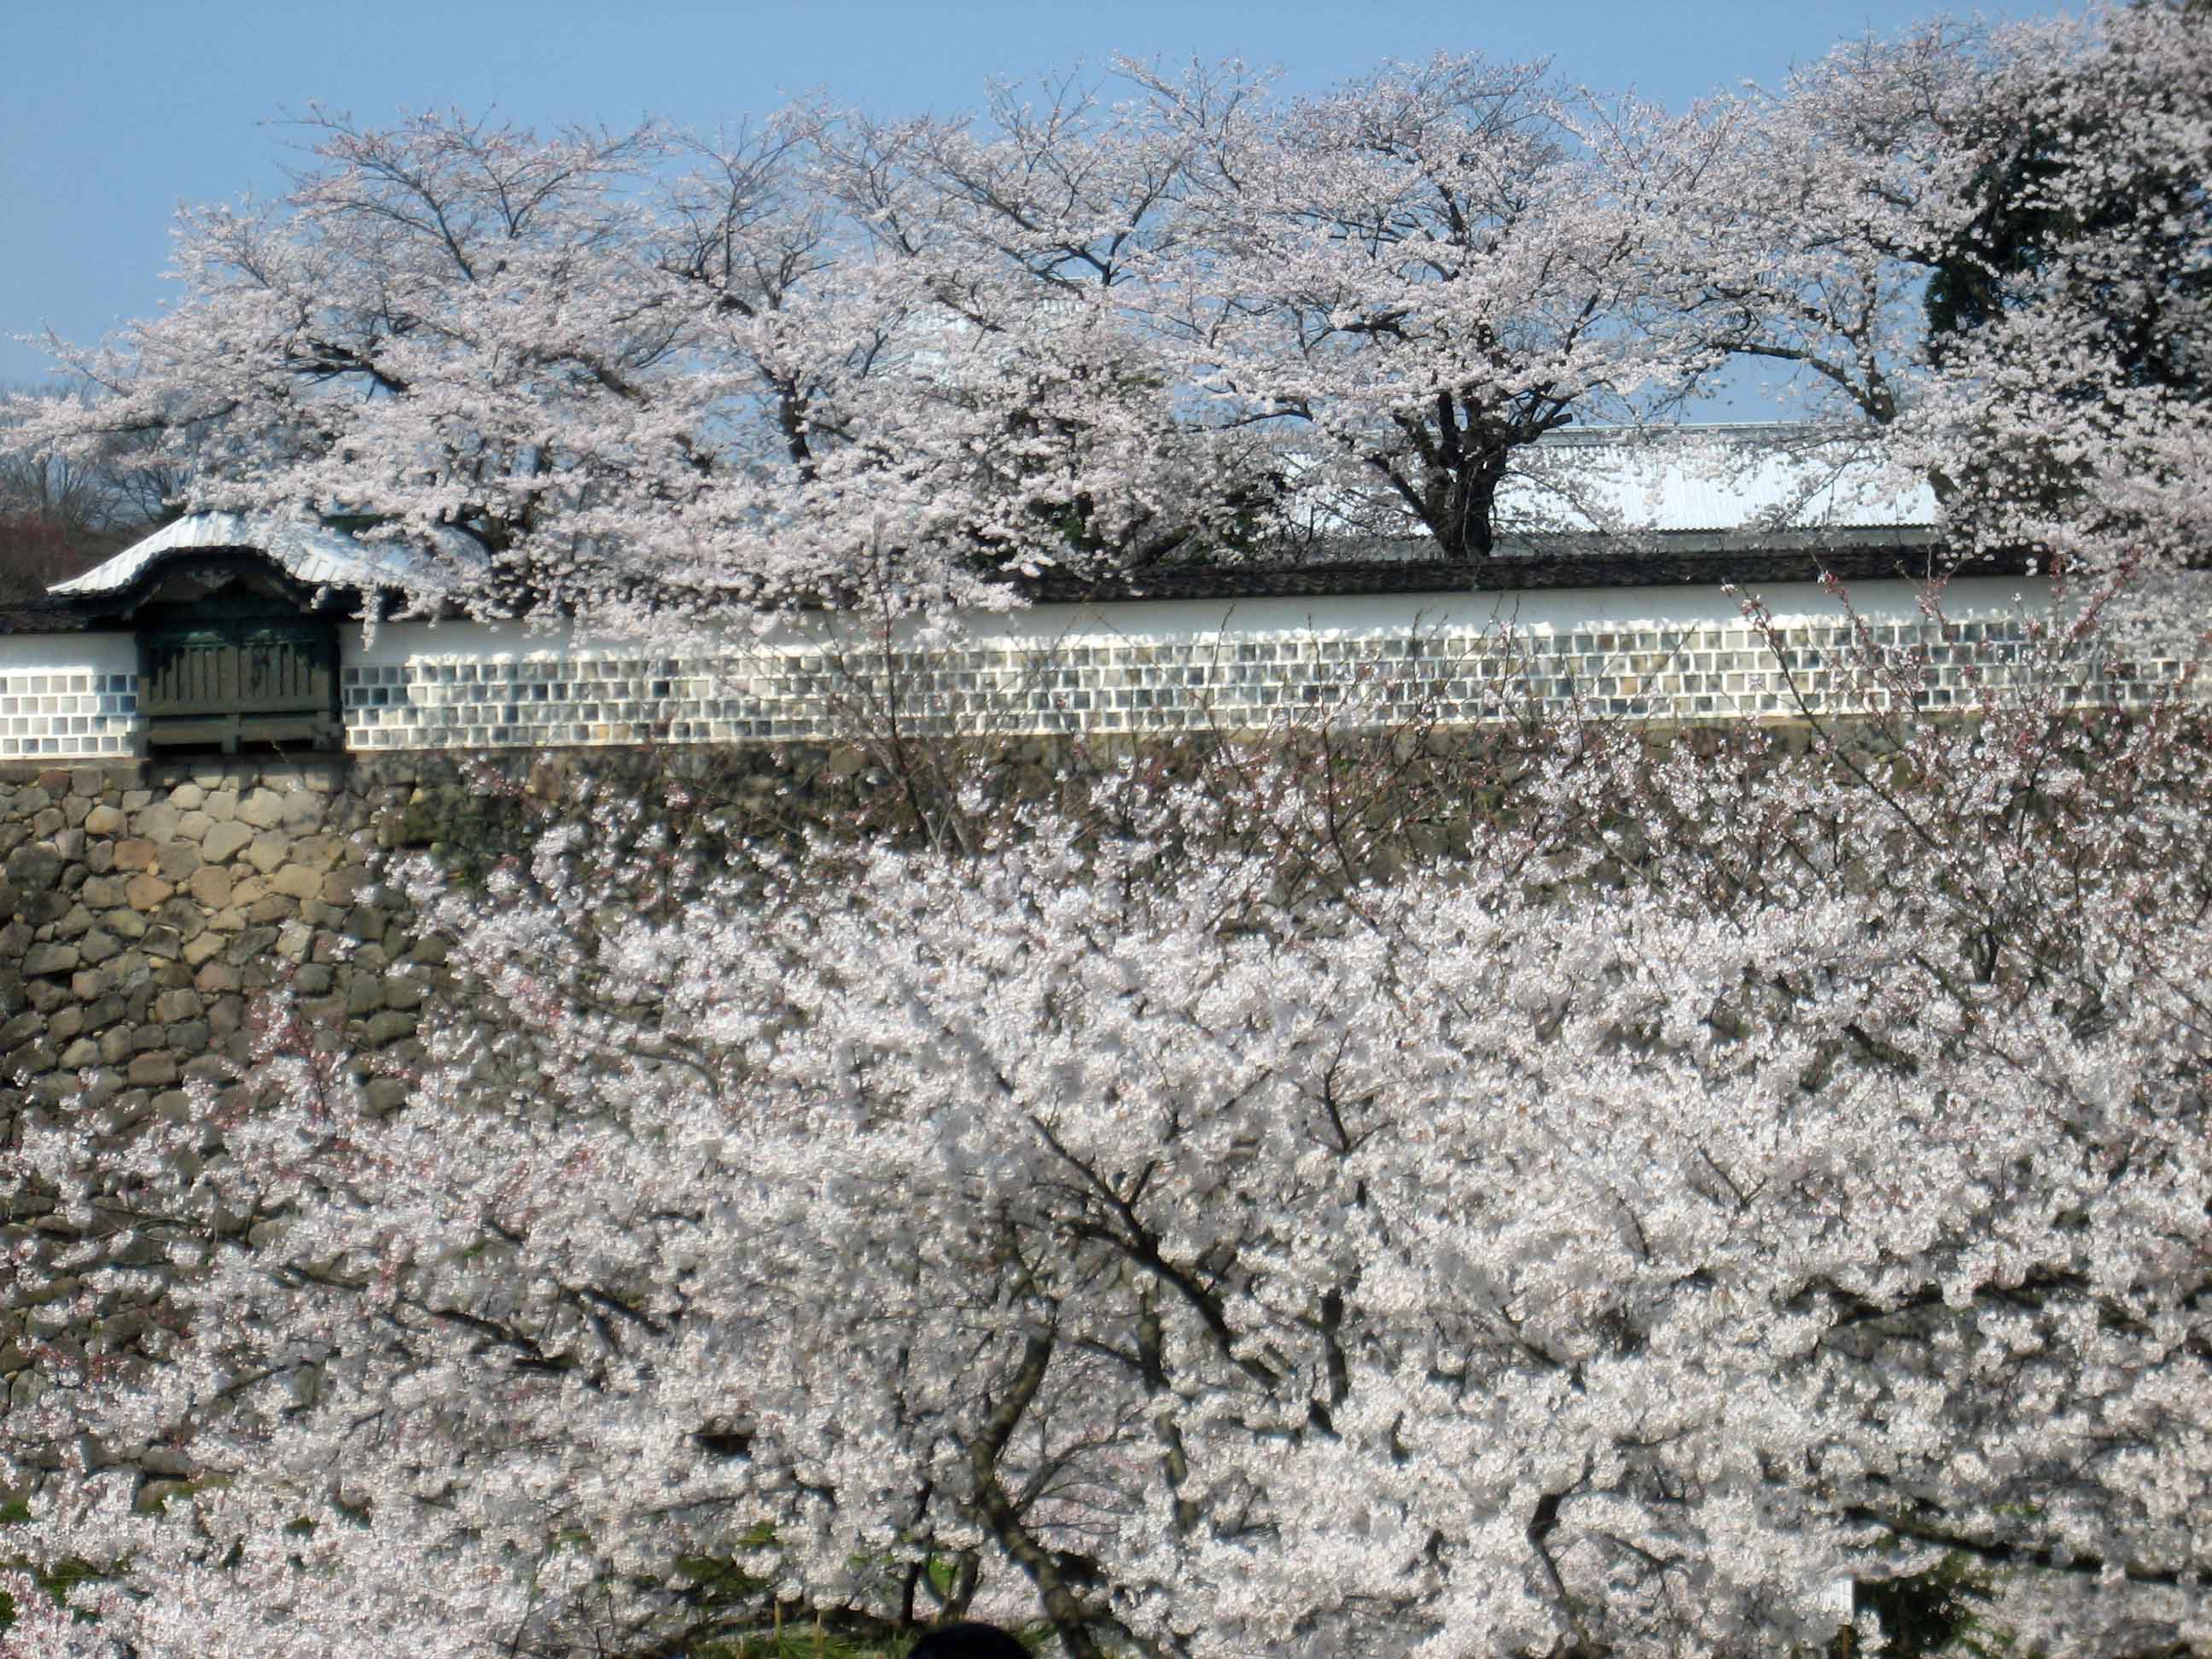 Kanazawa Castle Wall spectacular display of cherry blossom trees